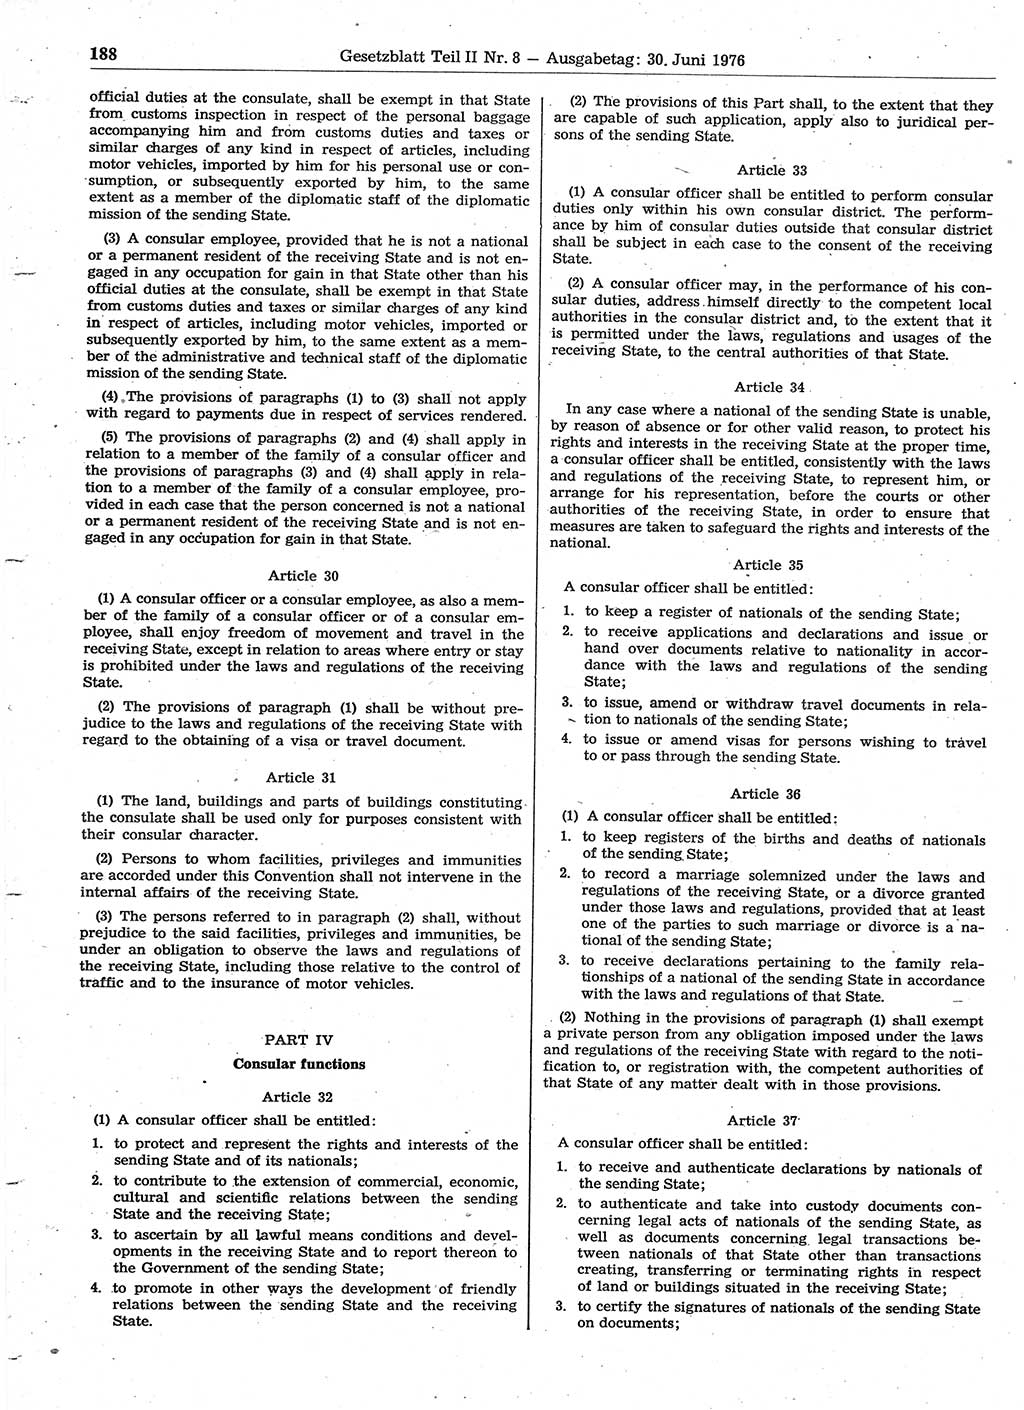 Gesetzblatt (GBl.) der Deutschen Demokratischen Republik (DDR) Teil ⅠⅠ 1976, Seite 188 (GBl. DDR ⅠⅠ 1976, S. 188)